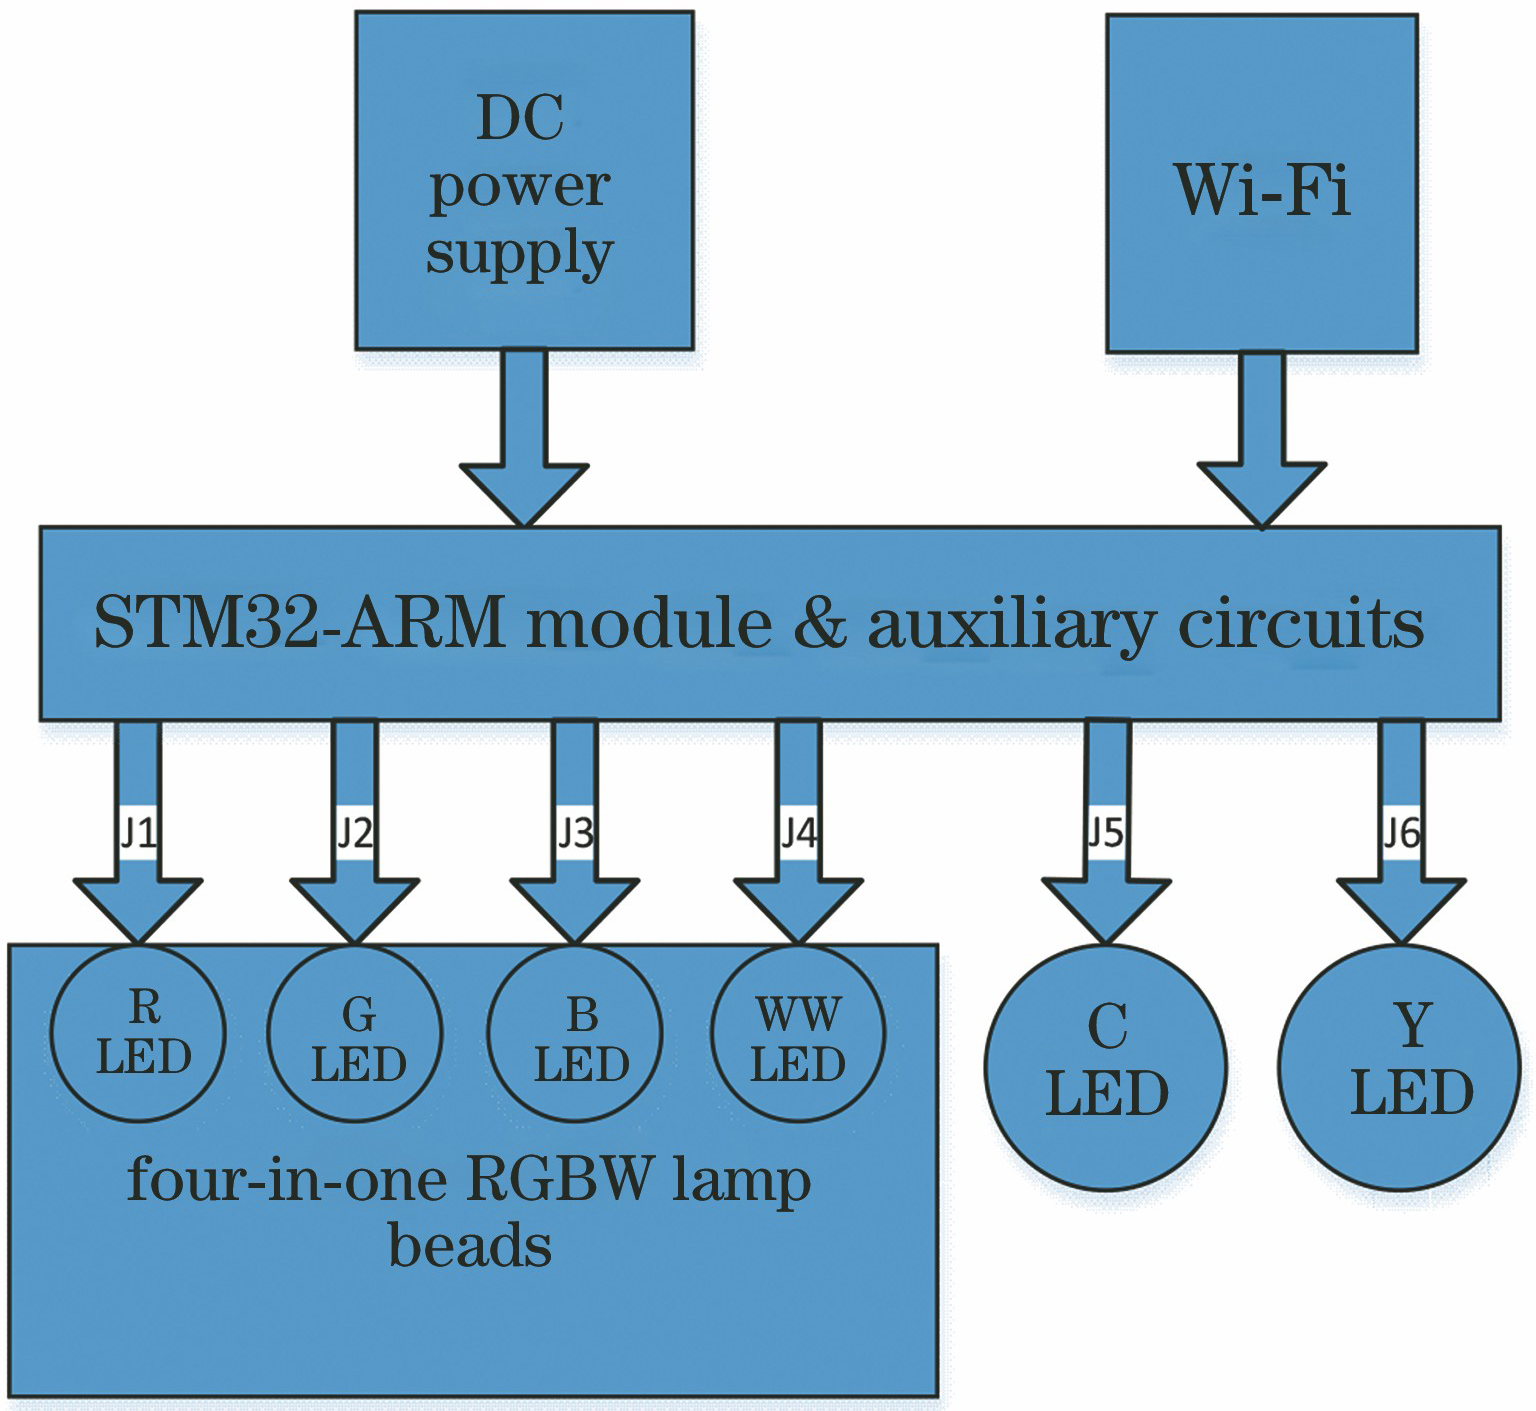 R/G/B/C/Y/WW LED module drive circuit schematic